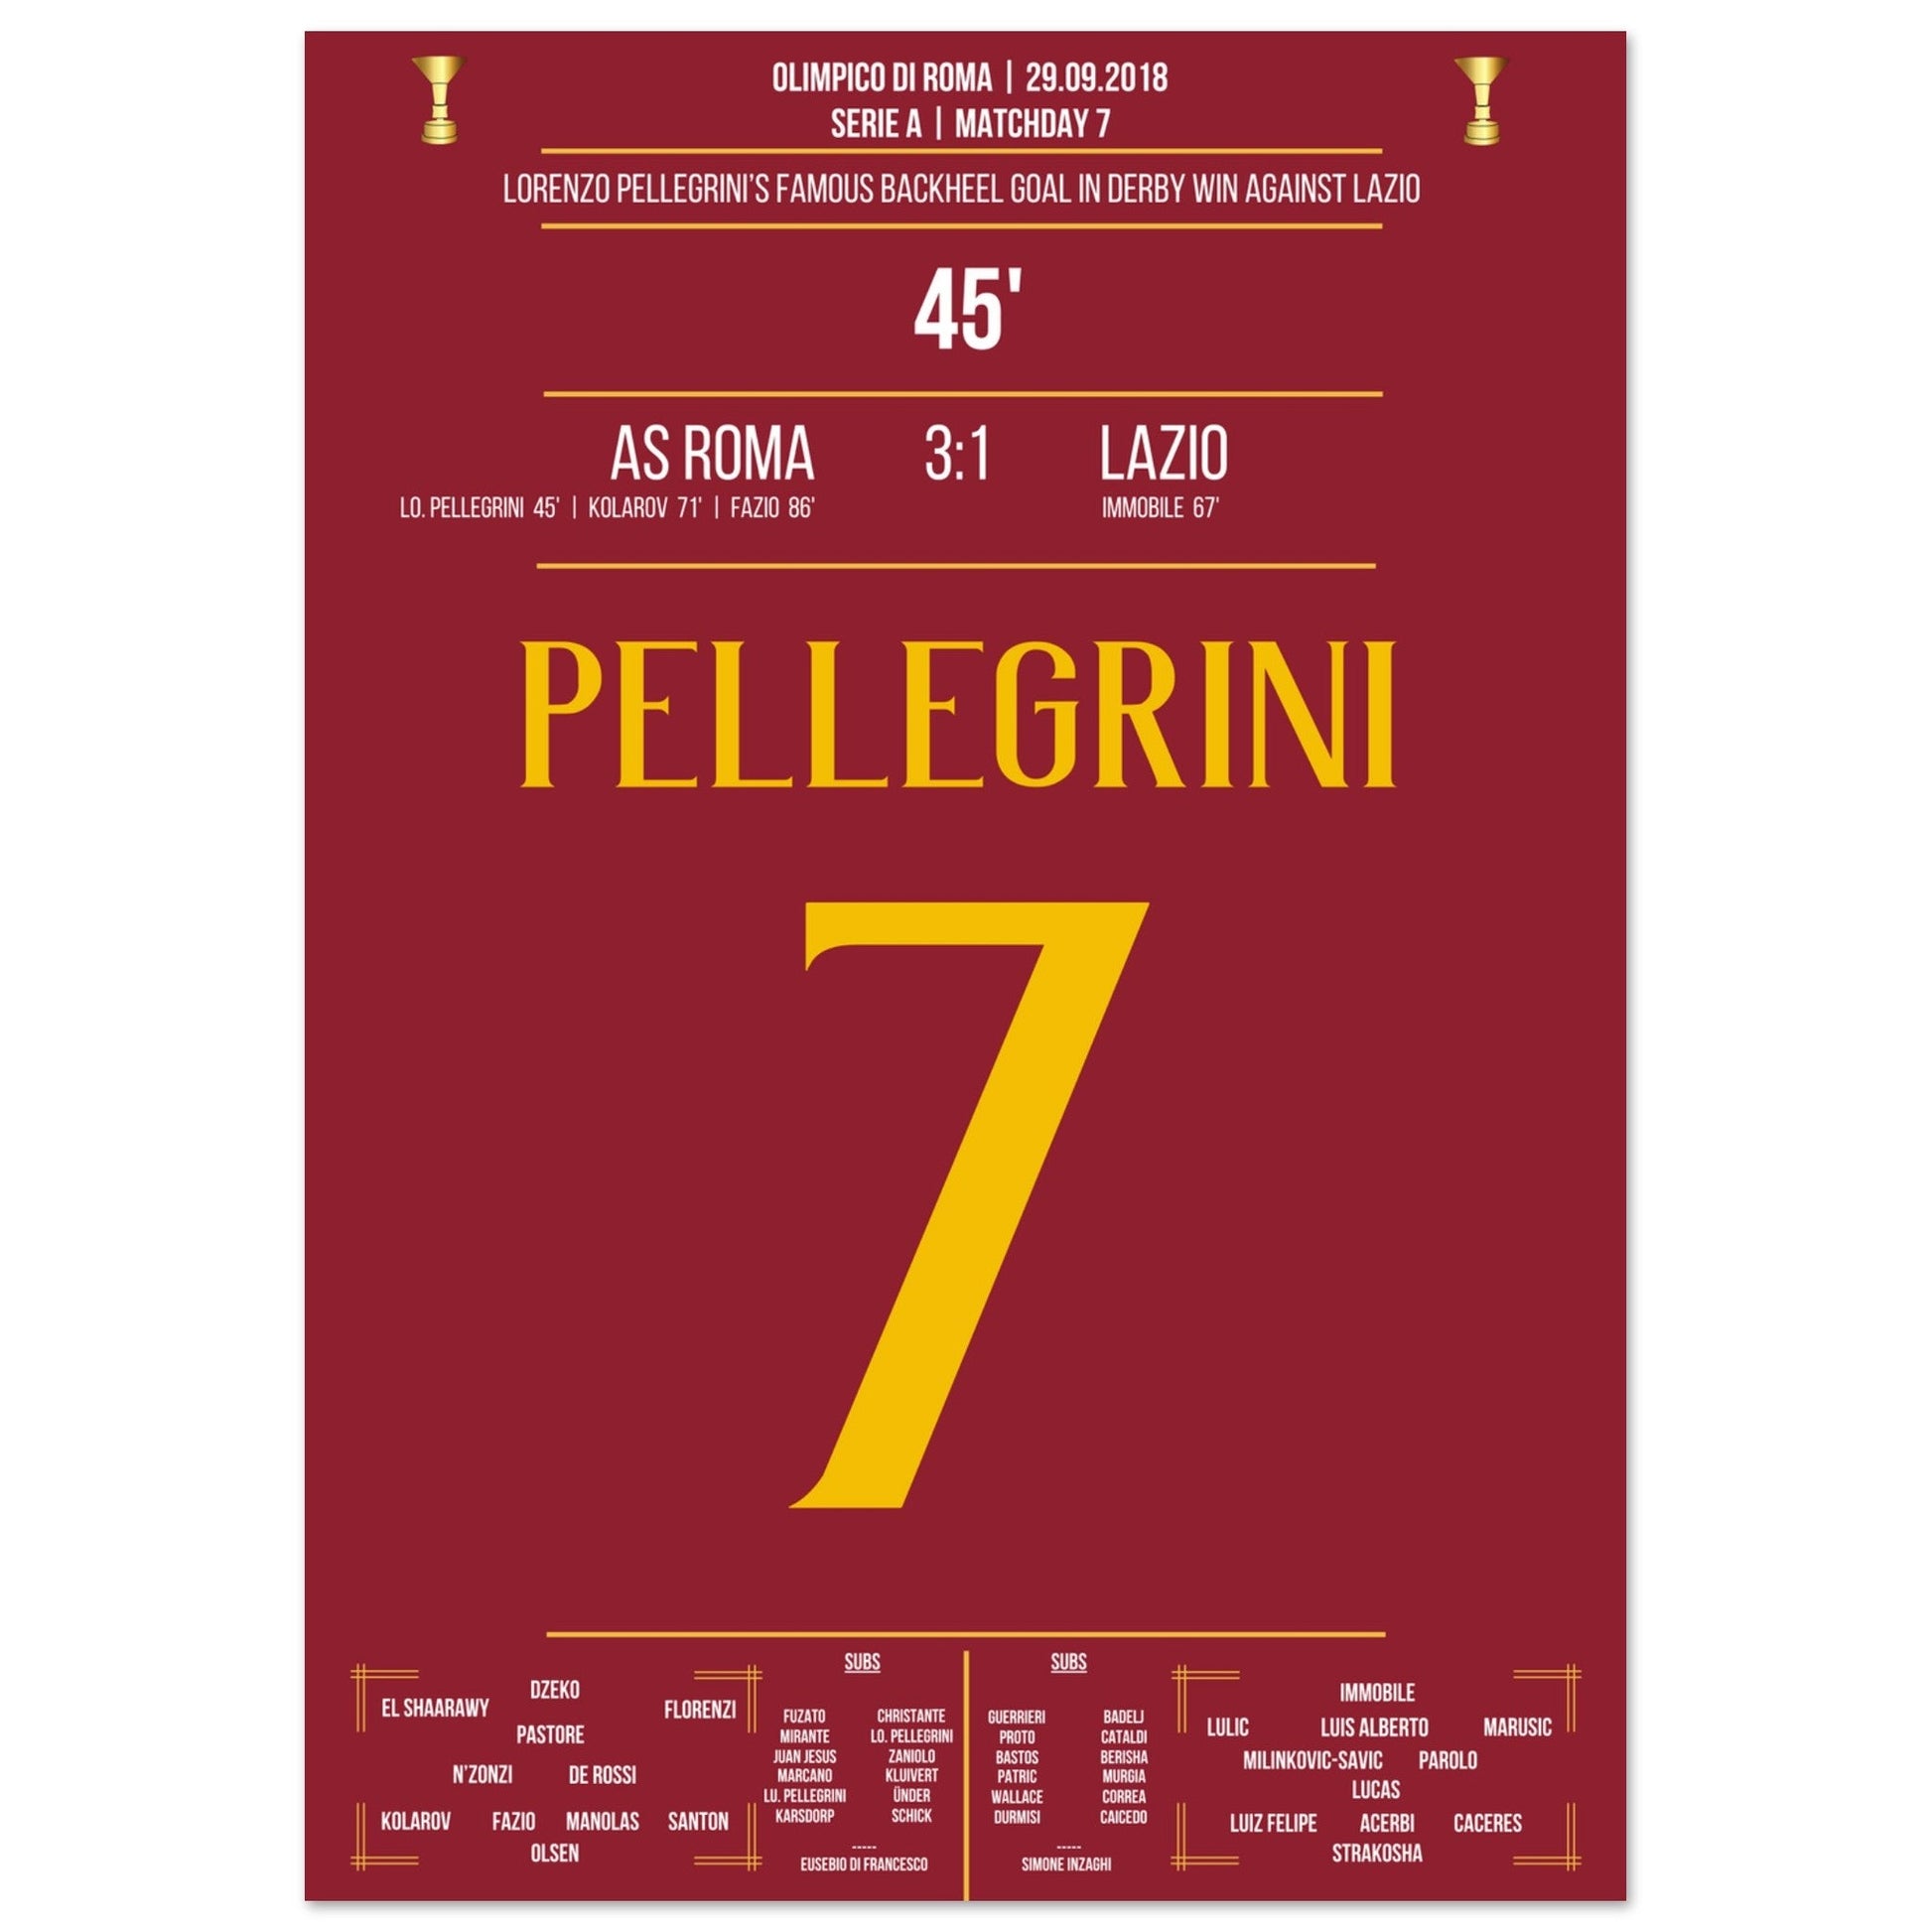 Pellegrini's Hackentor im Derby Sieg gegen Lazio in 2018 